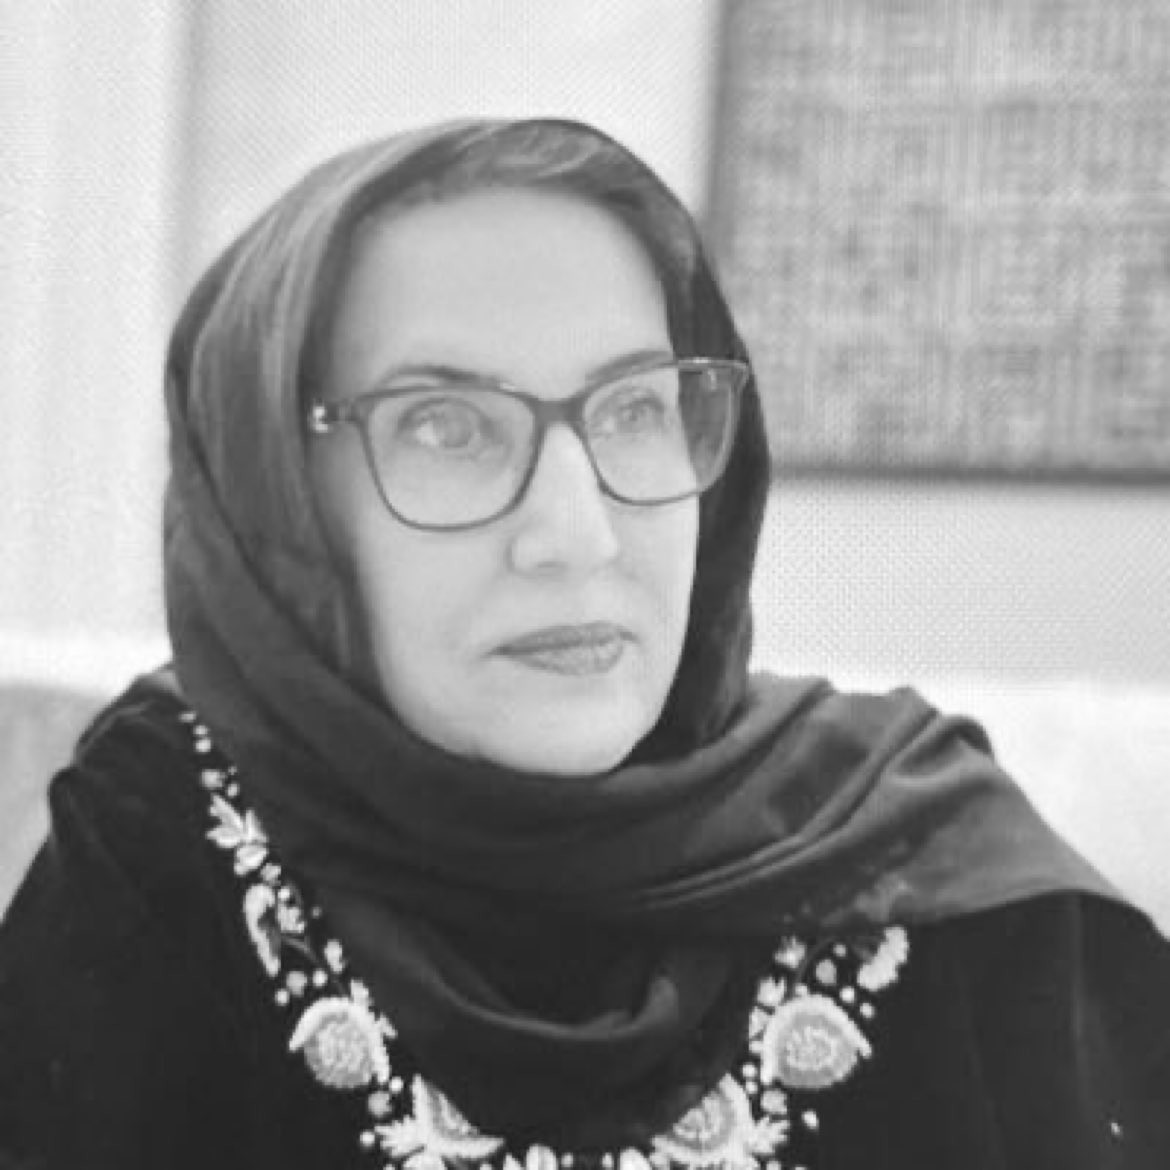 حقيقة وفاة منيرة الجاسم أستاذه الجغرافيا في جامعة الكويت